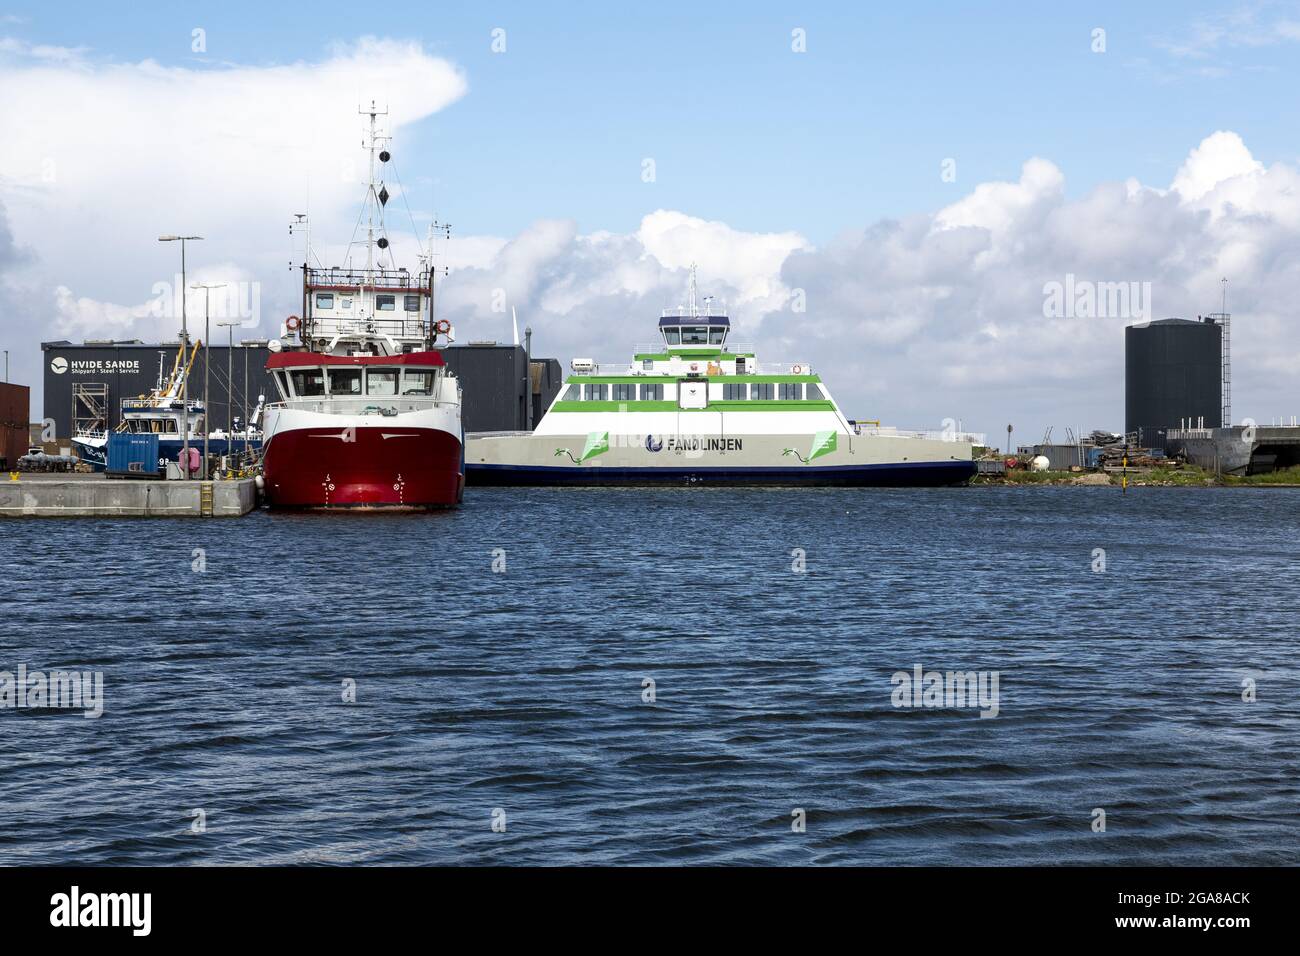 Porto di Hvide Sande e cantiere navale di Hvide Sande. Ormeggiato alla banchina è un nuovo traghetto per il percorso tra Esbjerg e Fanoe. Il nuovo traghetto 'Grotte' sarà sai Foto Stock